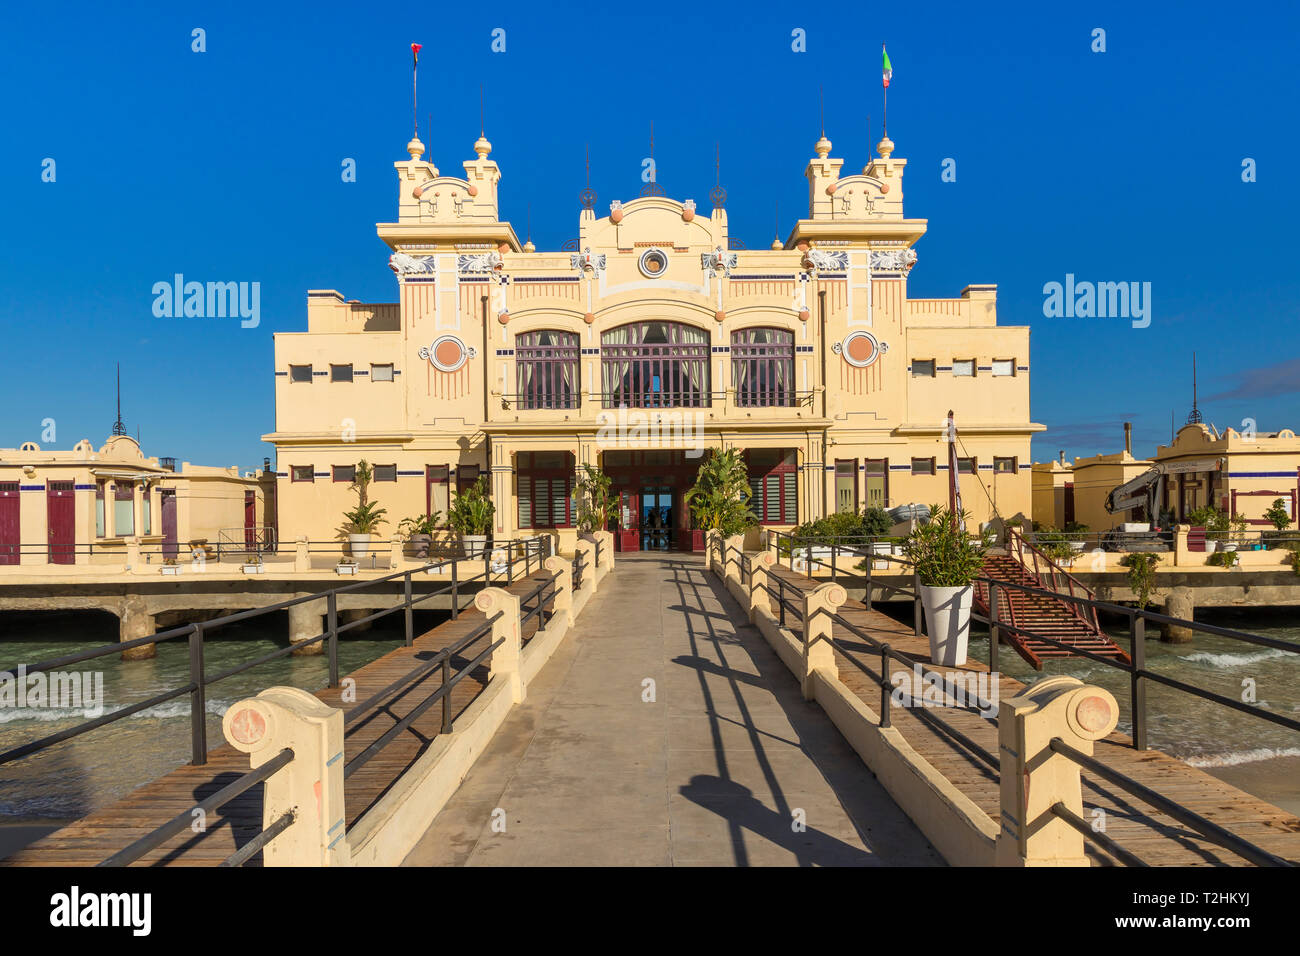 Das Antico Stabilimento Balneare Gebäude (auch als 'Charleston') von Mondello Borough, Palermo, Sizilien, Italien, Europa bekannt Stockfoto